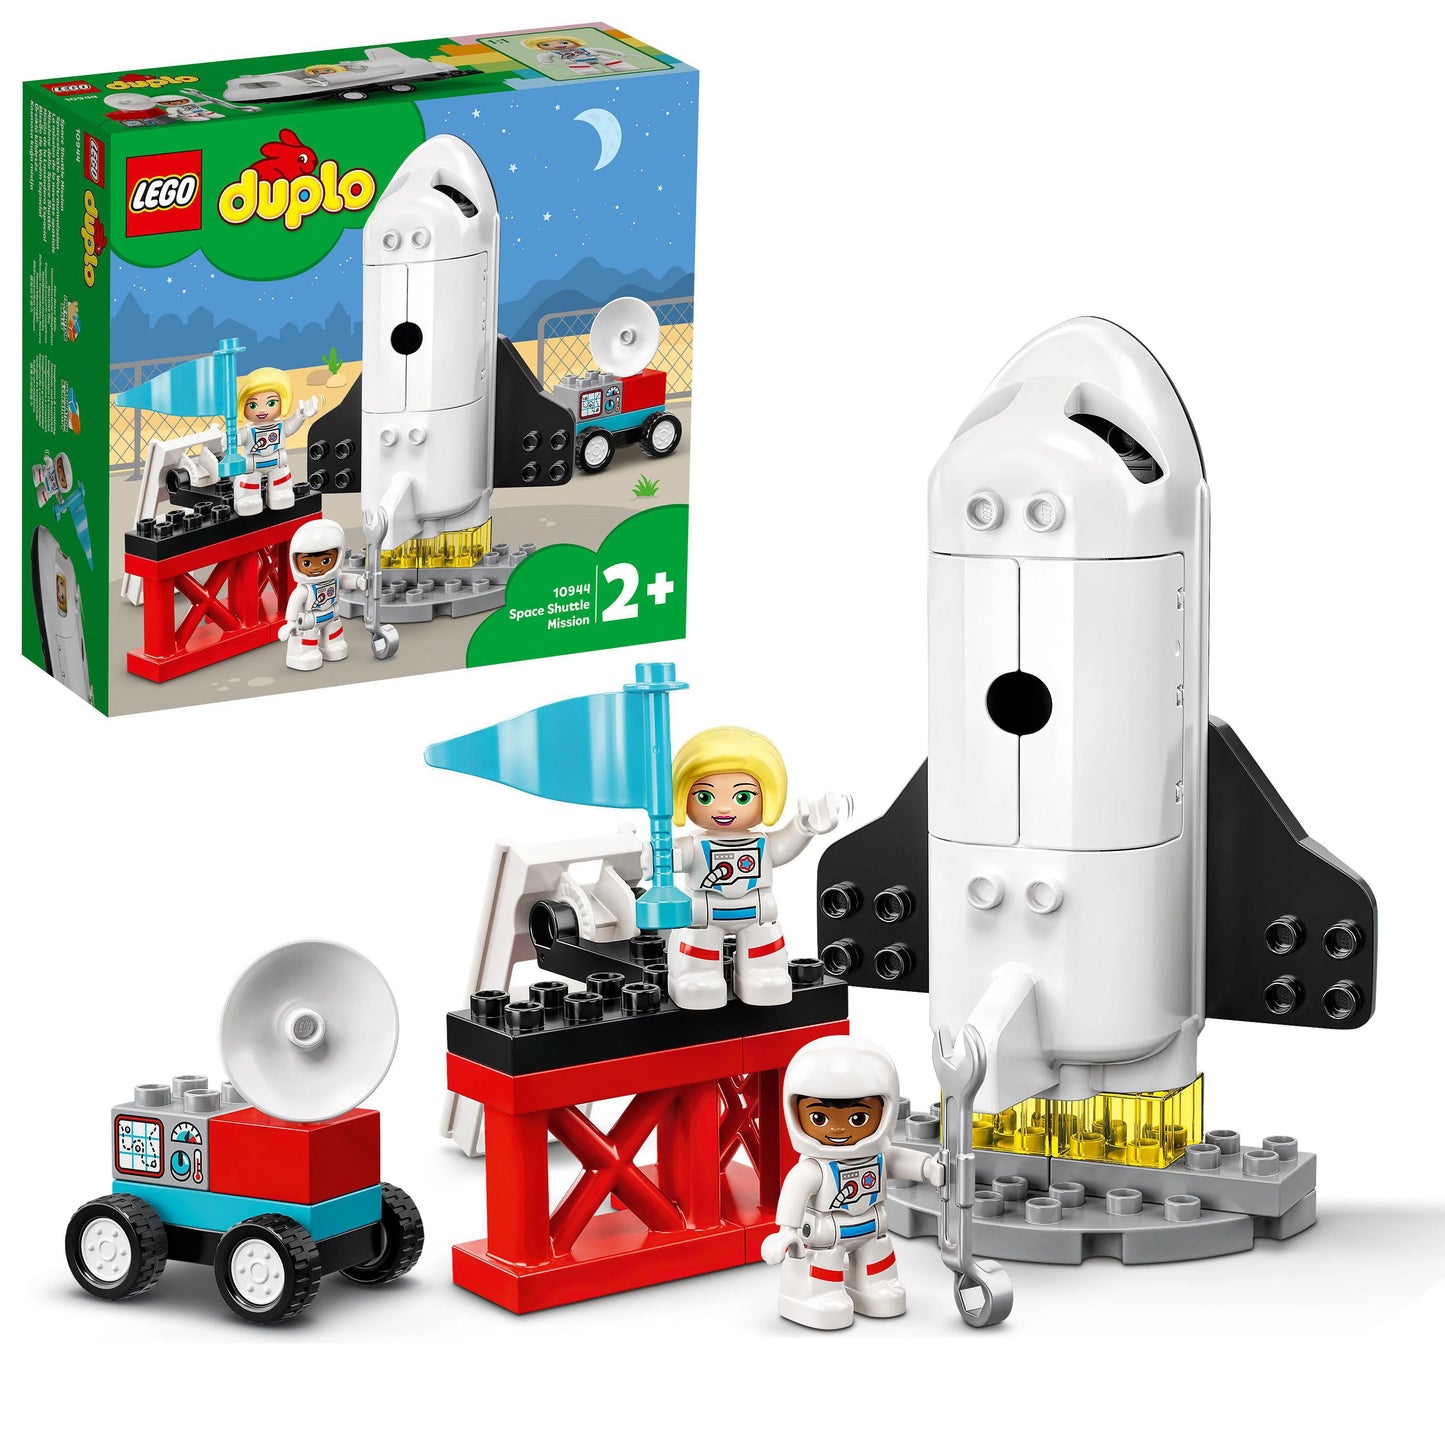 Space Shuttle Missie-LEGO Duplo